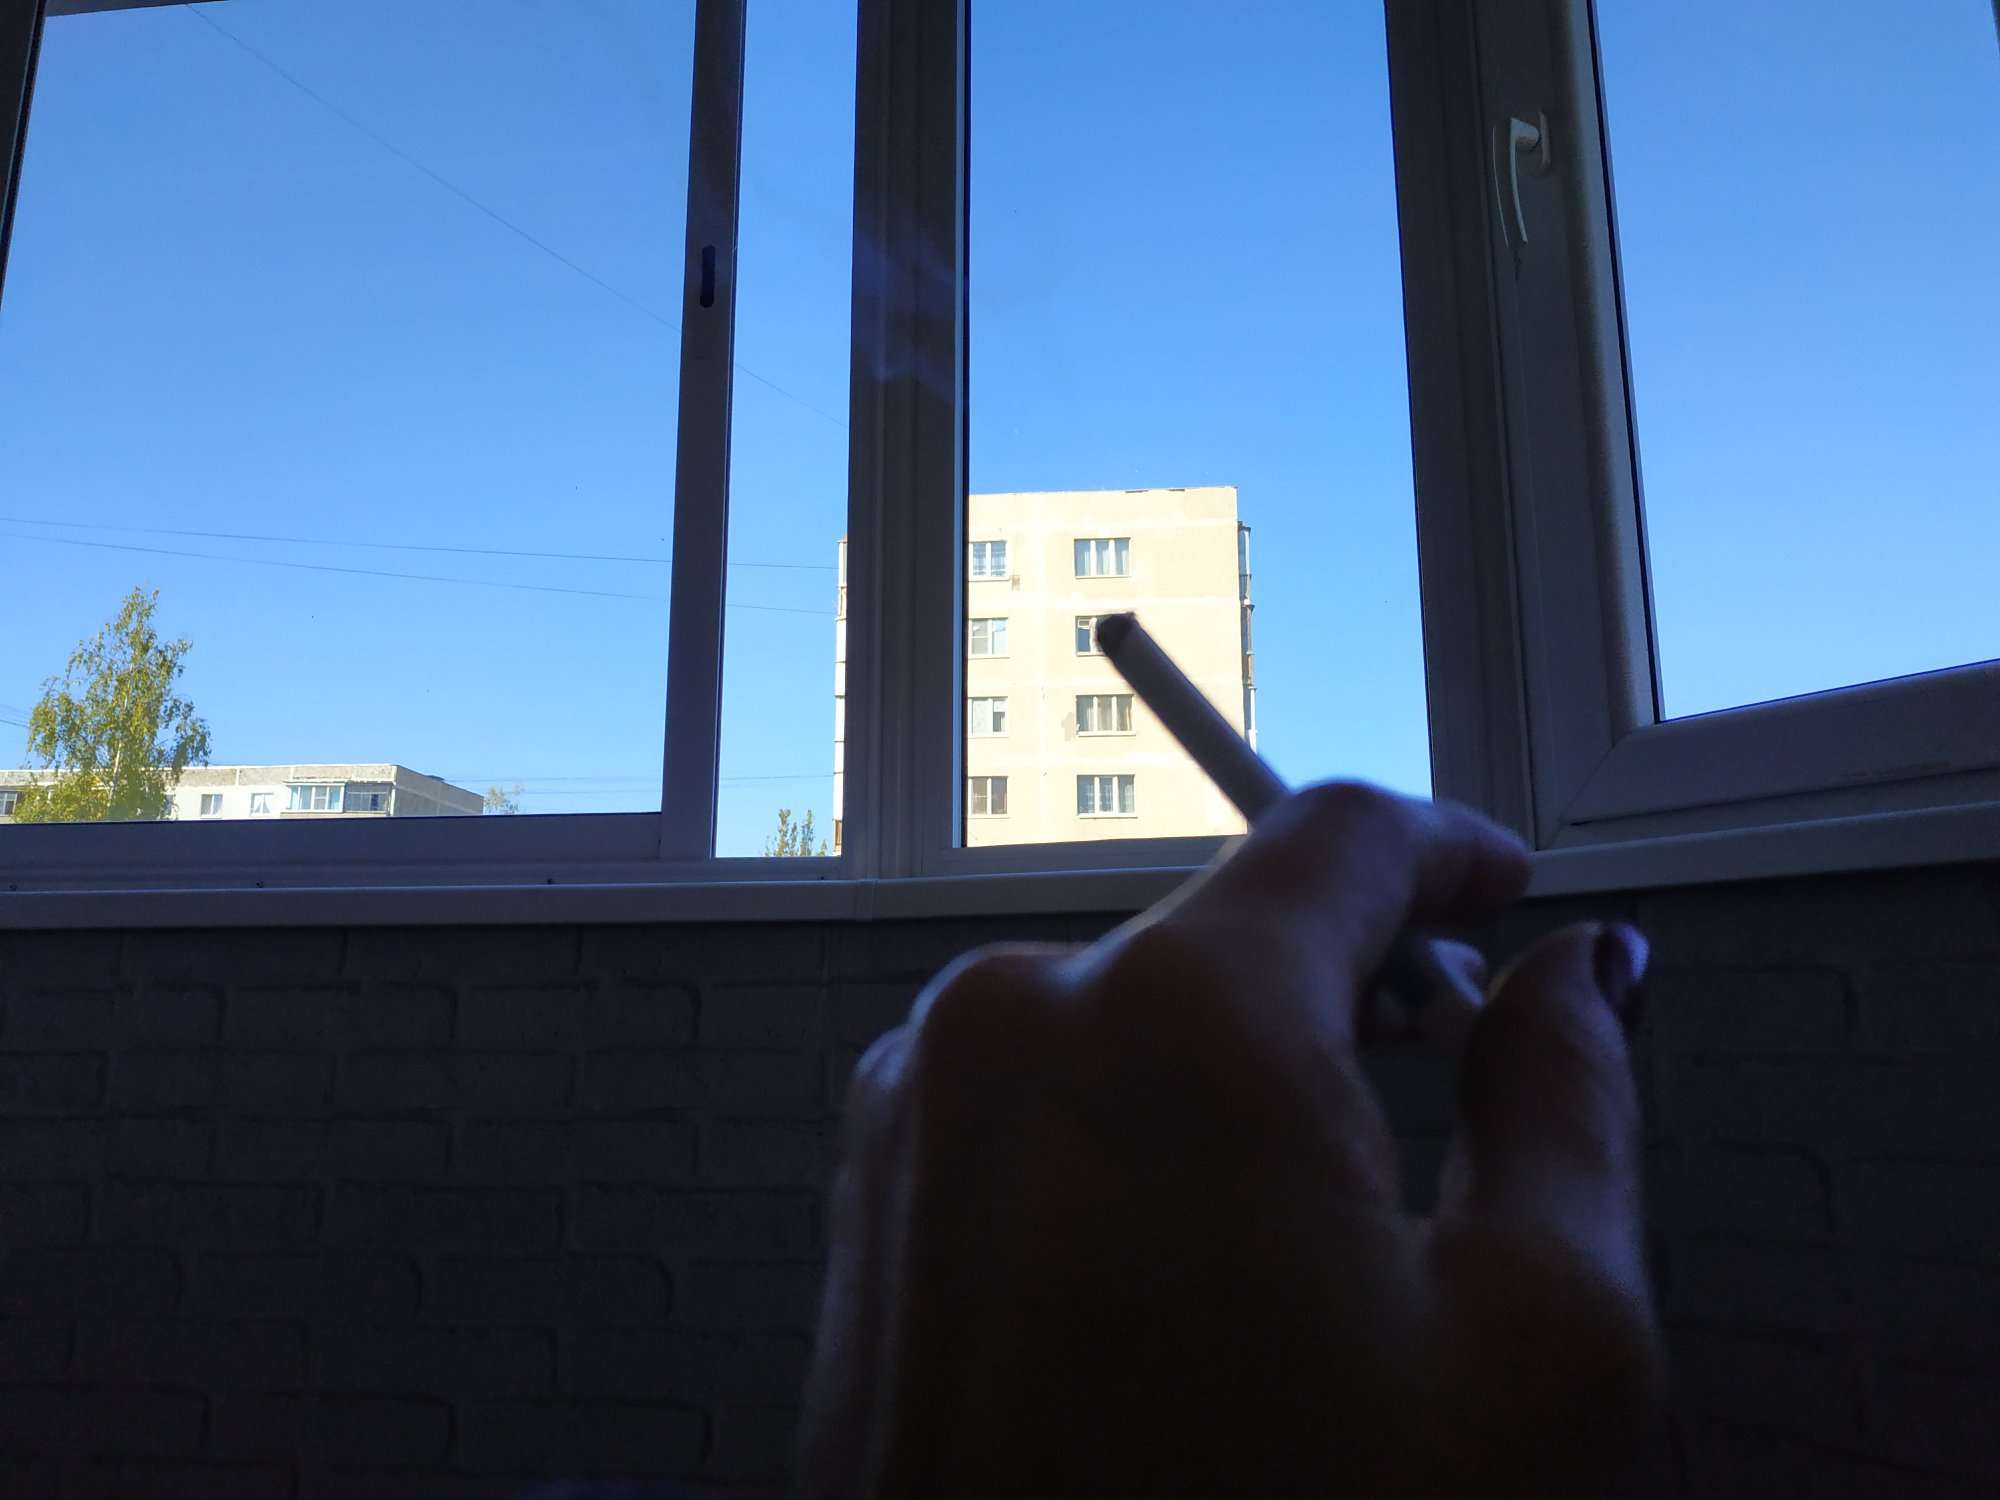 Общие балконы можно курить. Курит на балконе. С сигаретой на балконе. Курение на балконе. Человек с сигаретой на балконе.